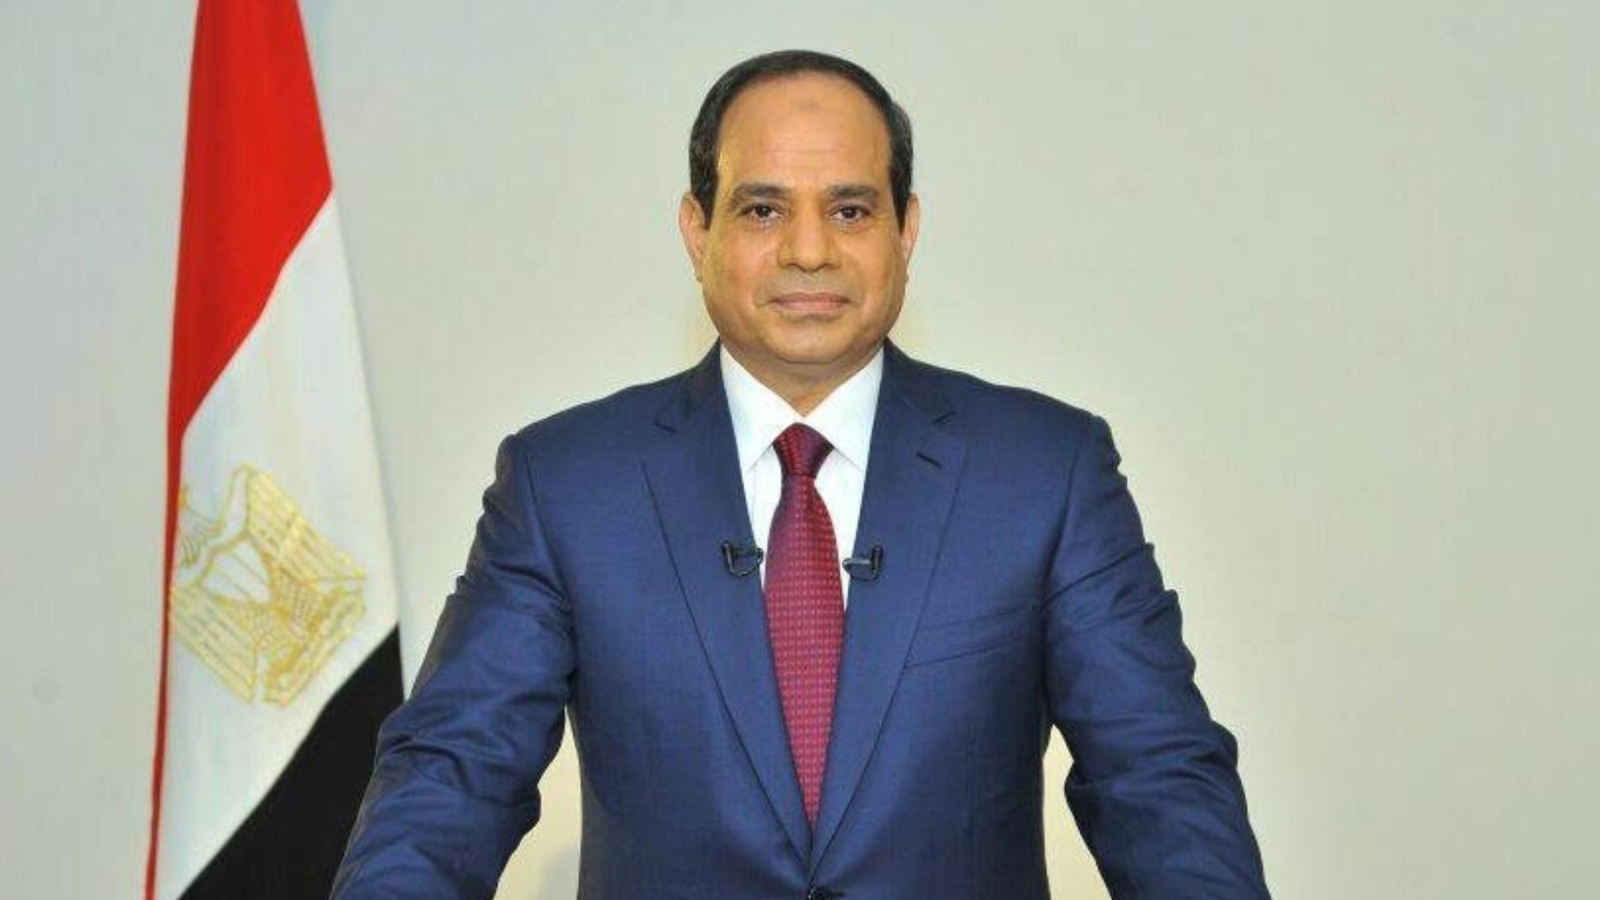 تعديل الدستور في مصر رغم المعارضة الشديدة